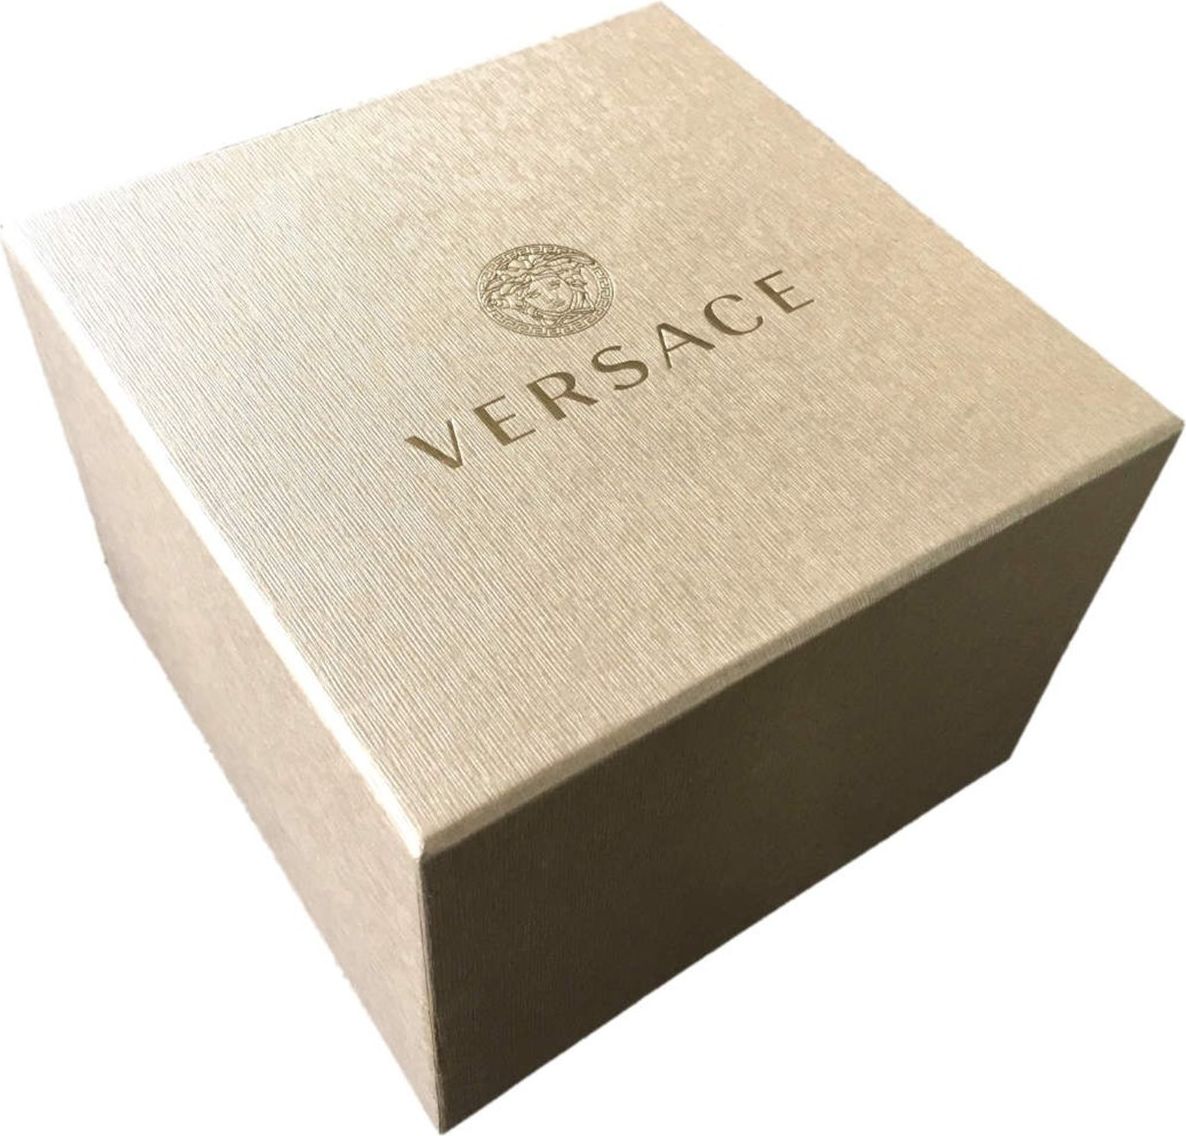 Versace VE3A00720 Hellenyium heren horloge 42 mm Groen